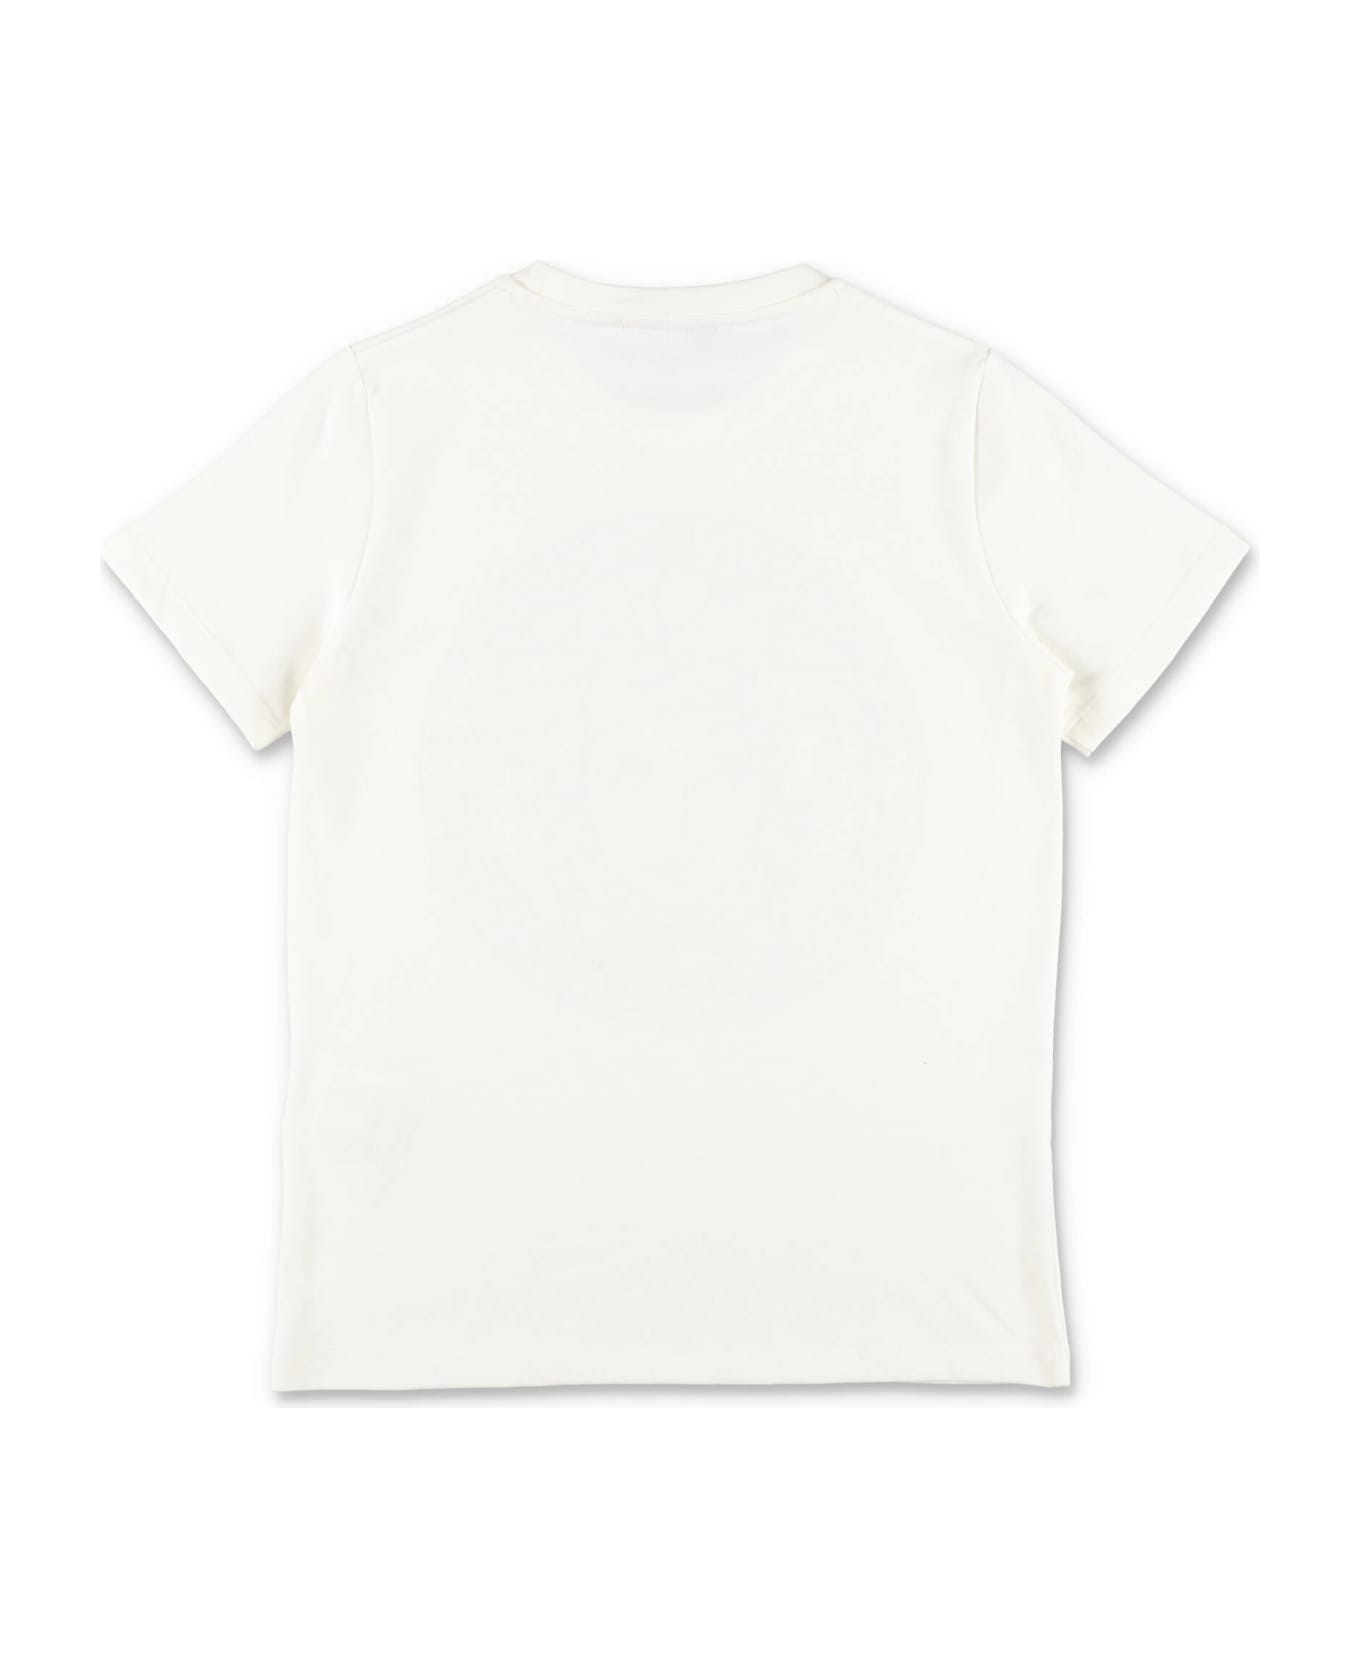 Versace T-shirt Bianca In Jersey Di Cotone Bambino - Bianco Tシャツ＆ポロシャツ